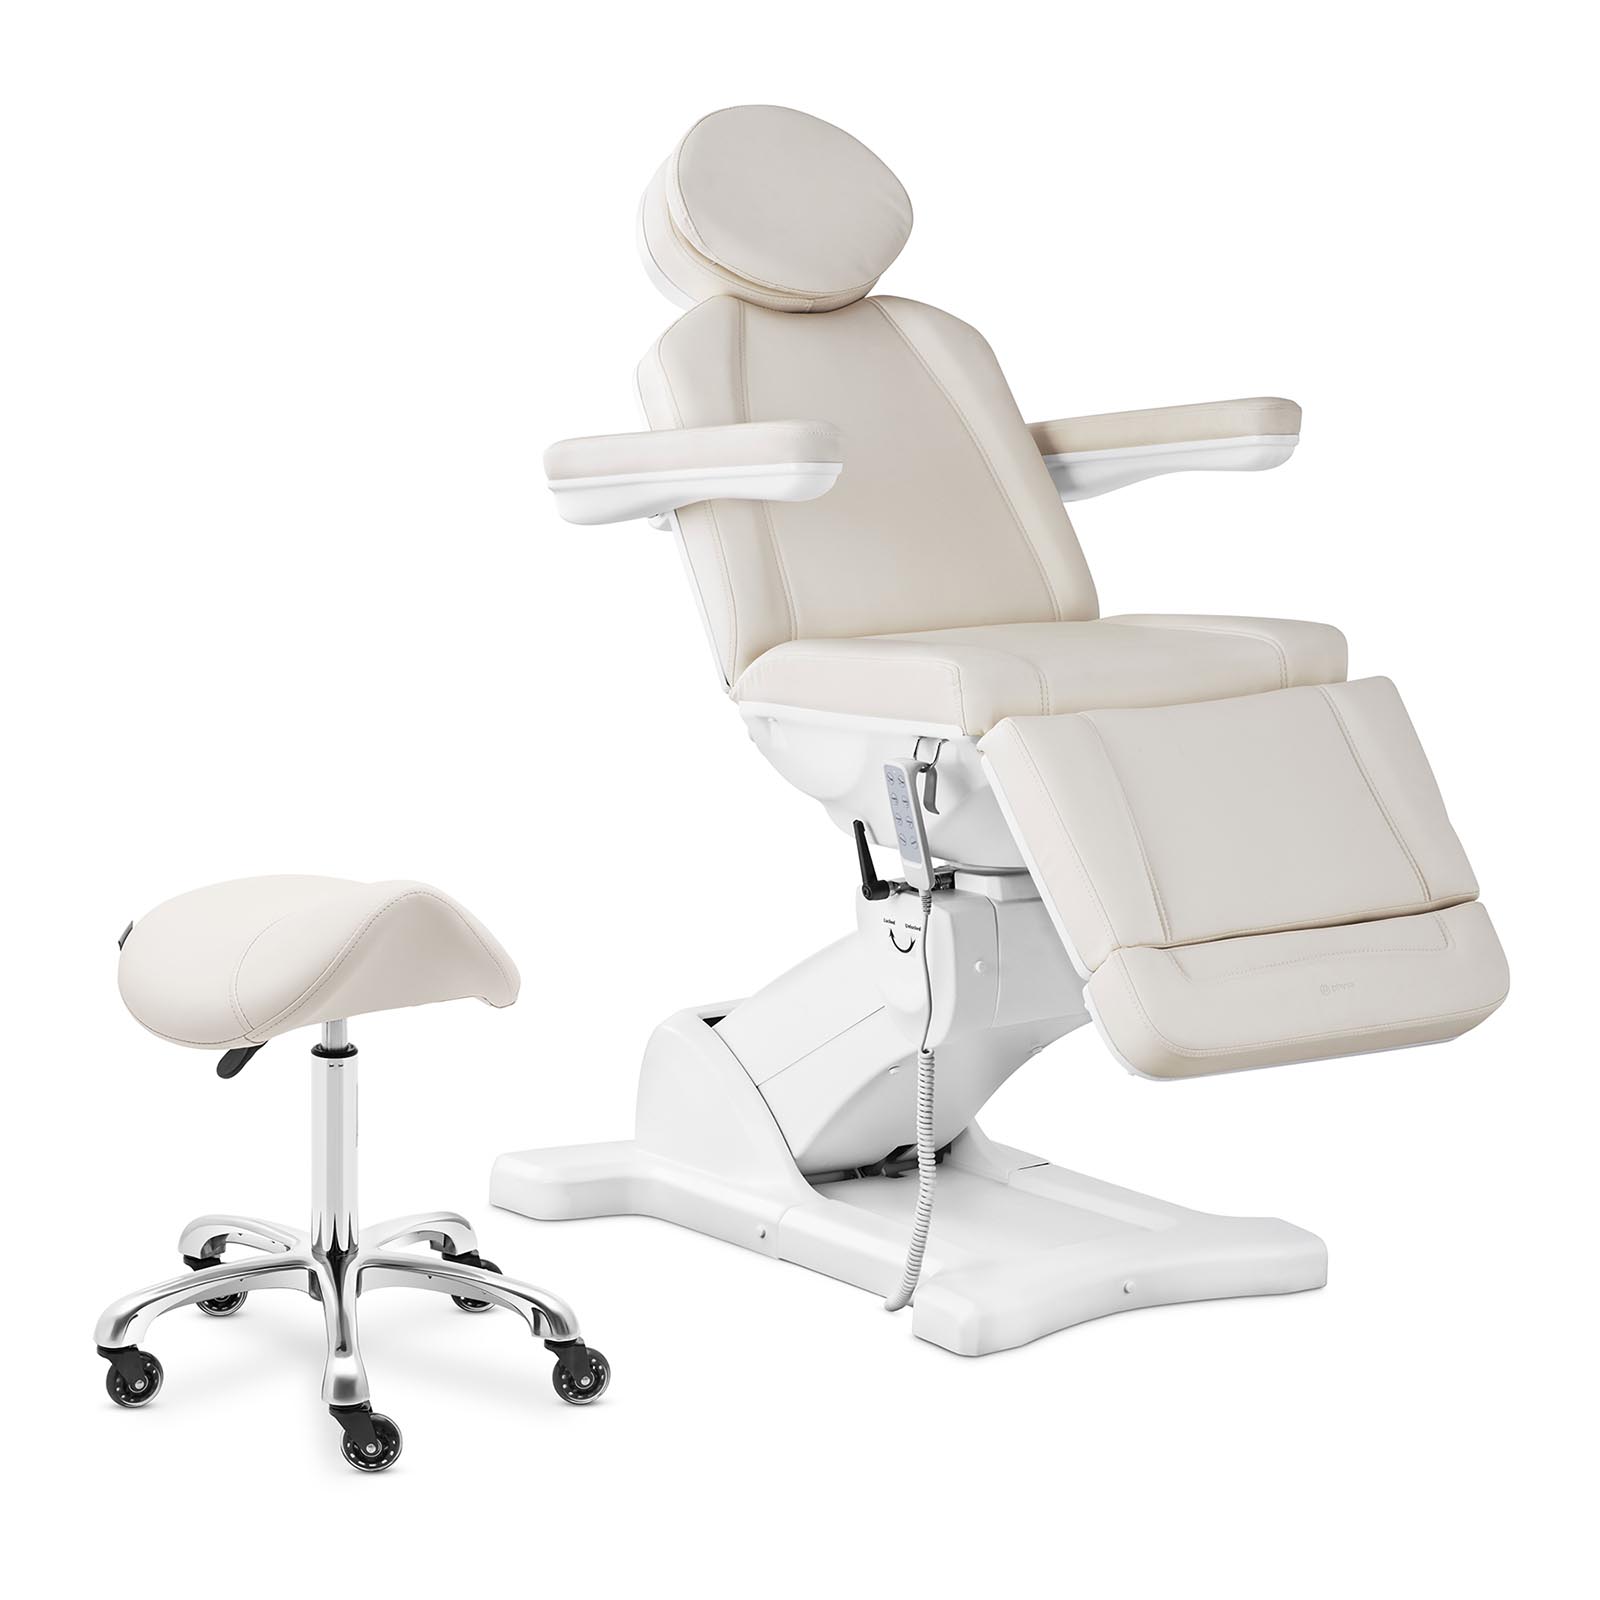 Cadeira de cosmética e cadeira de selim - bege, branco